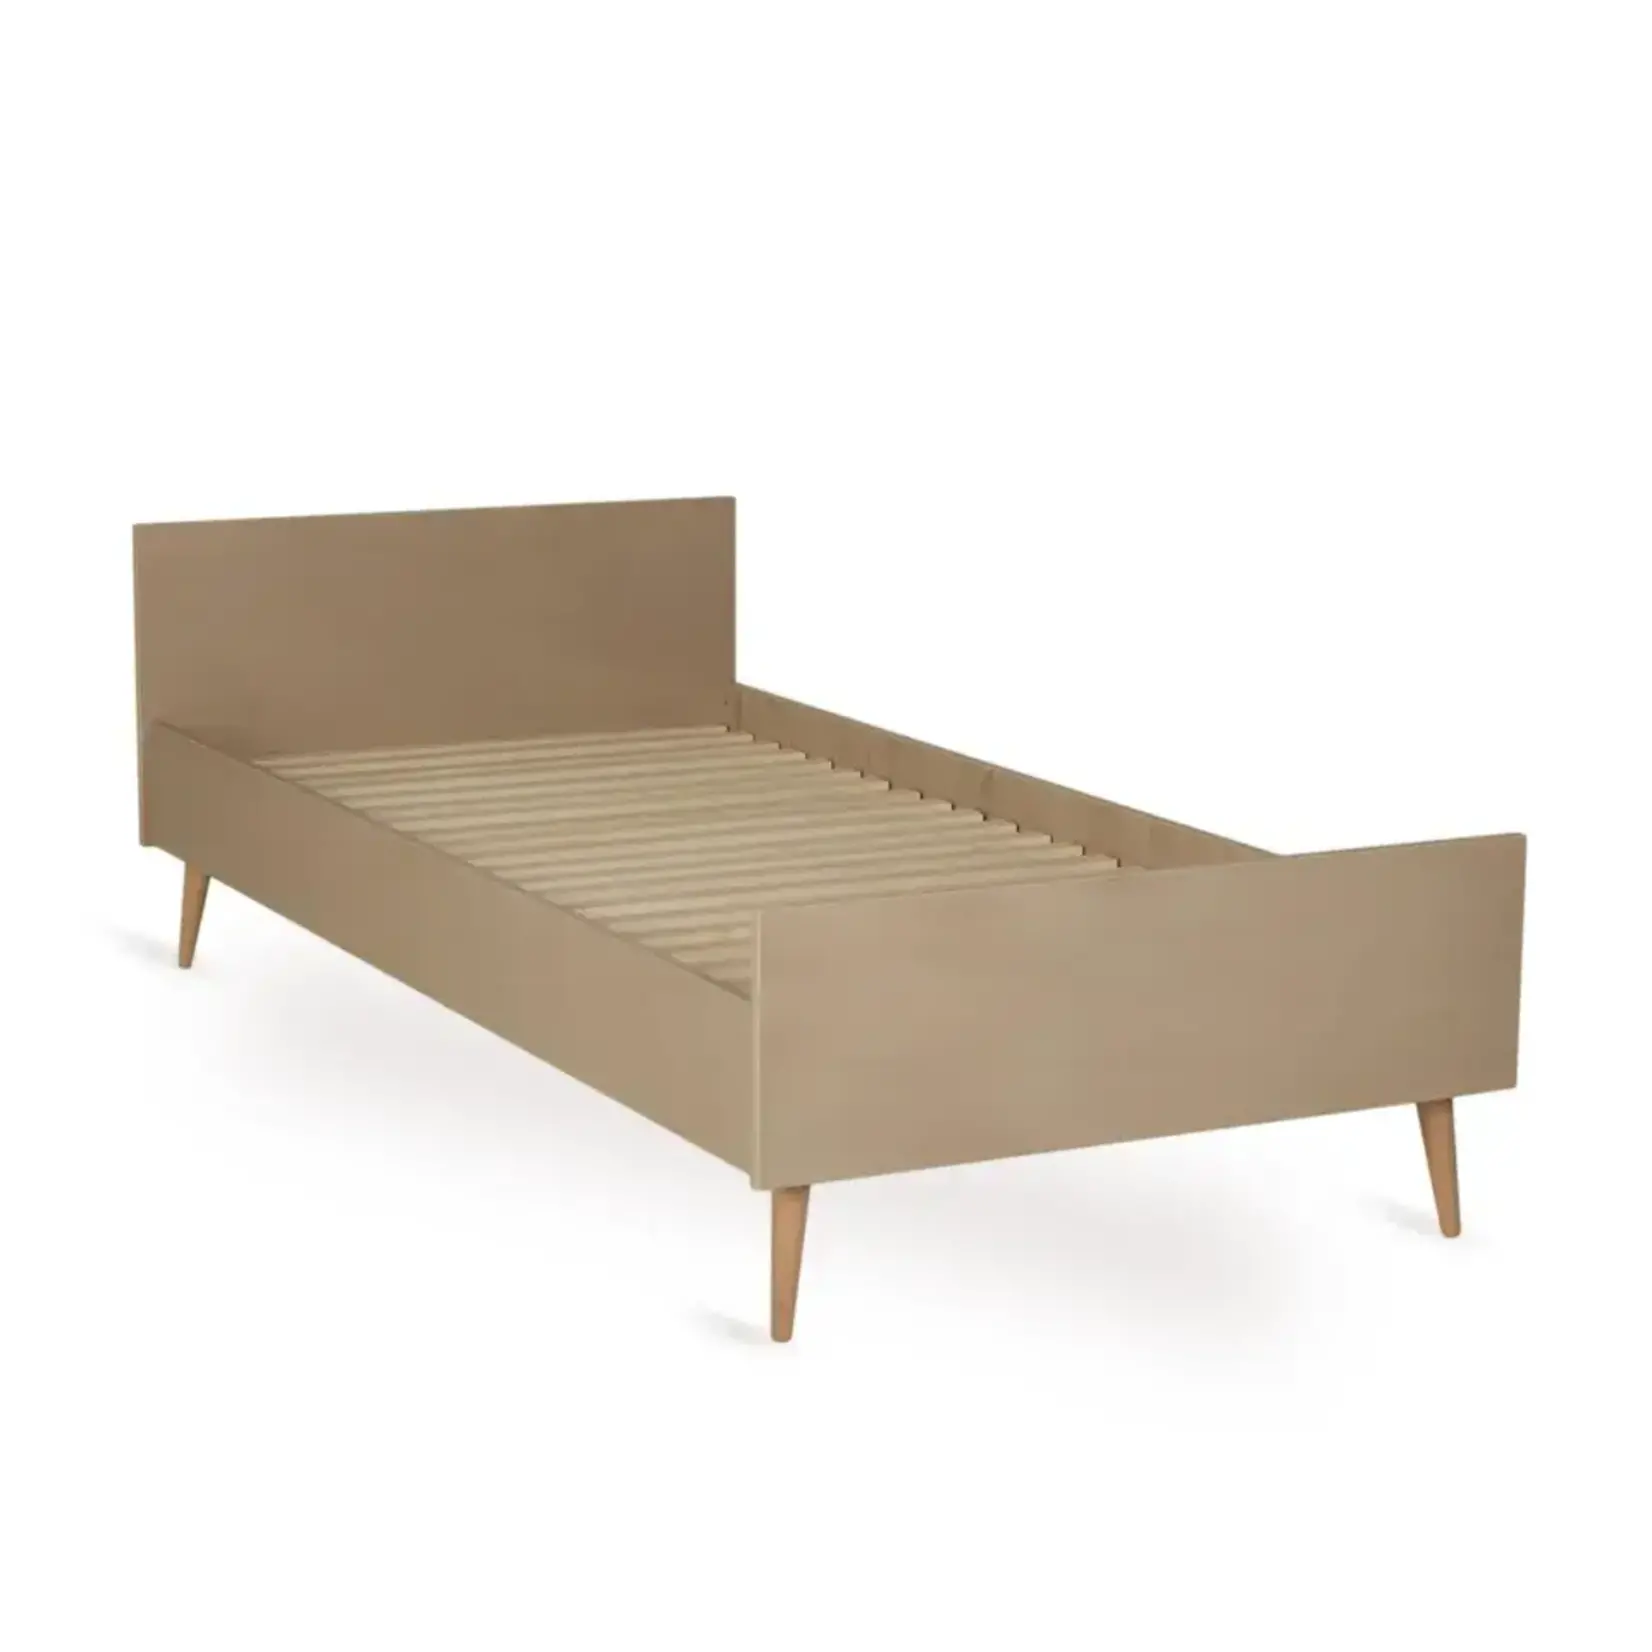 Quax Cocoon Junior Bed - 200 x 90 cm - Latte